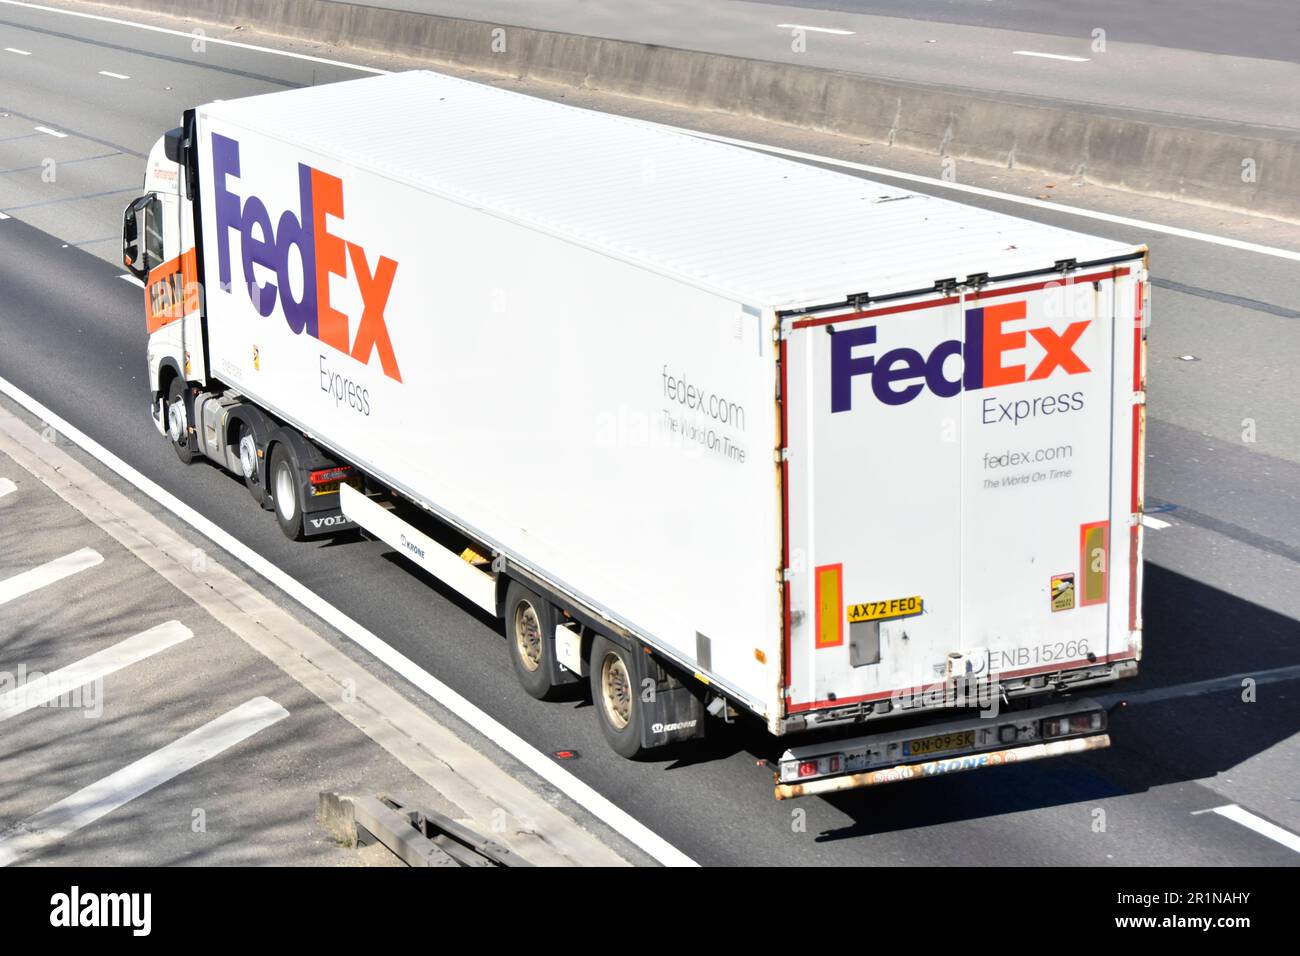 Vue latérale arrière de l'antenne HAM transport Business Groupe moteur de camion Volvo hgv et semi-remorque à carrosserie rigide FedEx Express M25 route d'autoroute Essex Royaume-Uni Banque D'Images